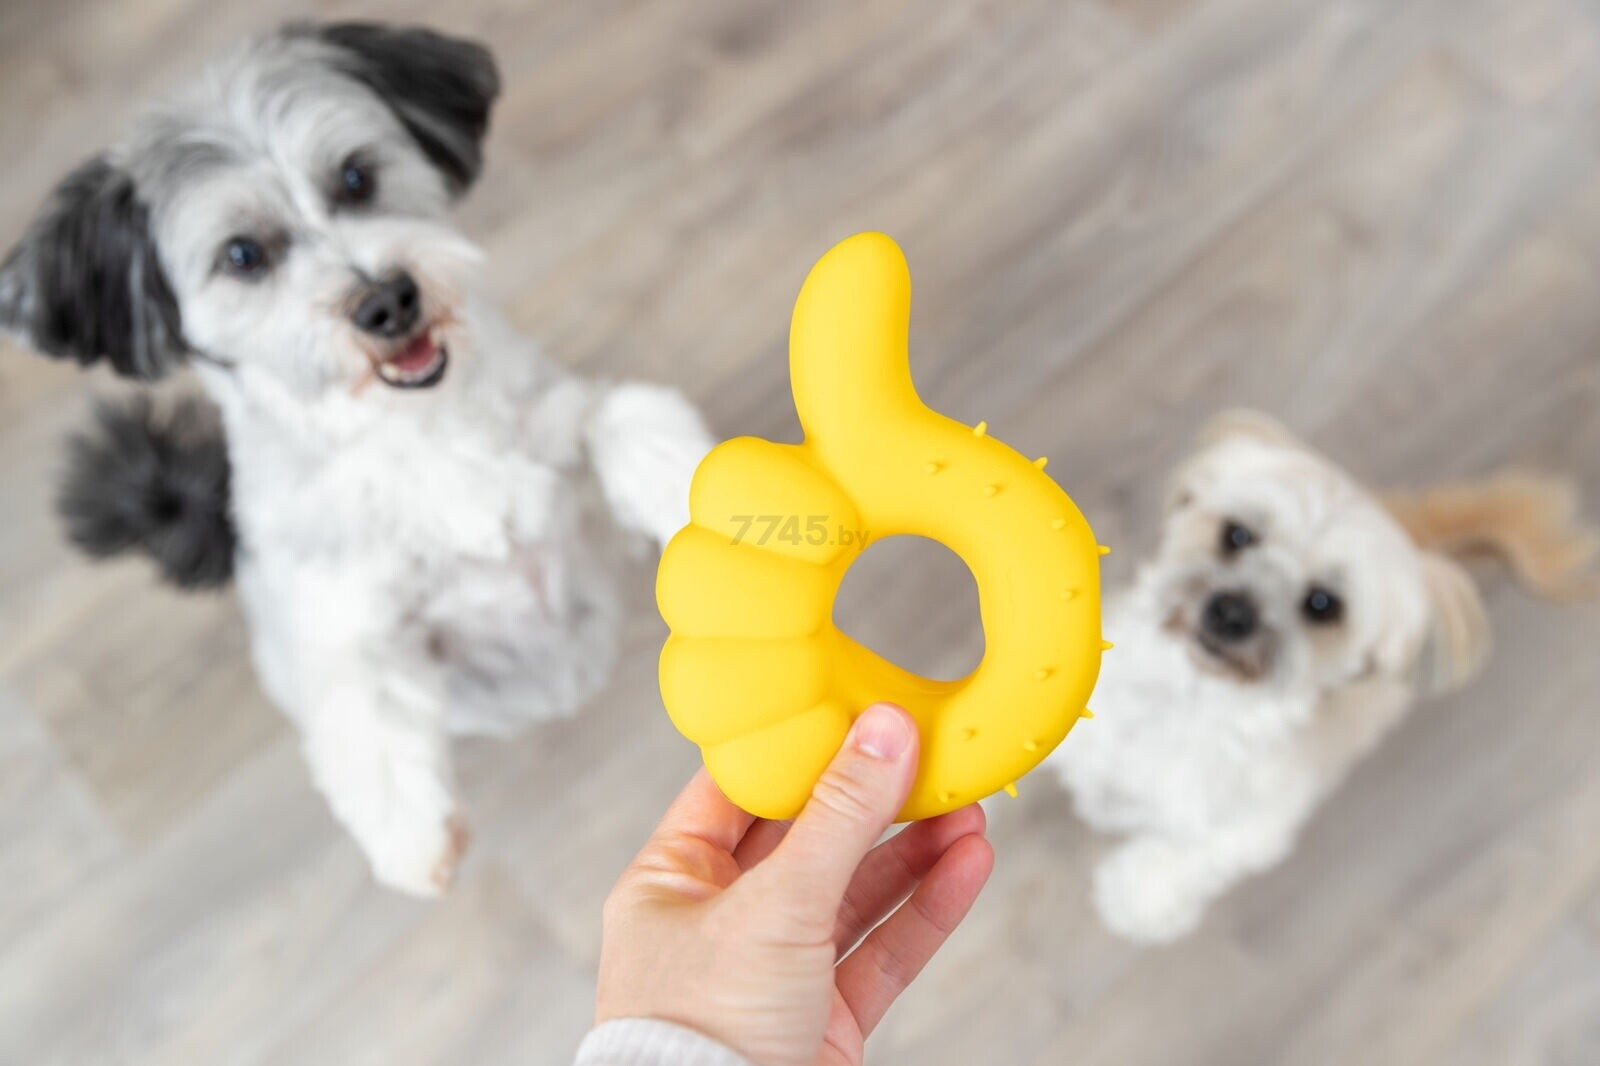 Игрушка для собак TRIXIE Палец вверх 14 см желтый (35518) - Фото 4